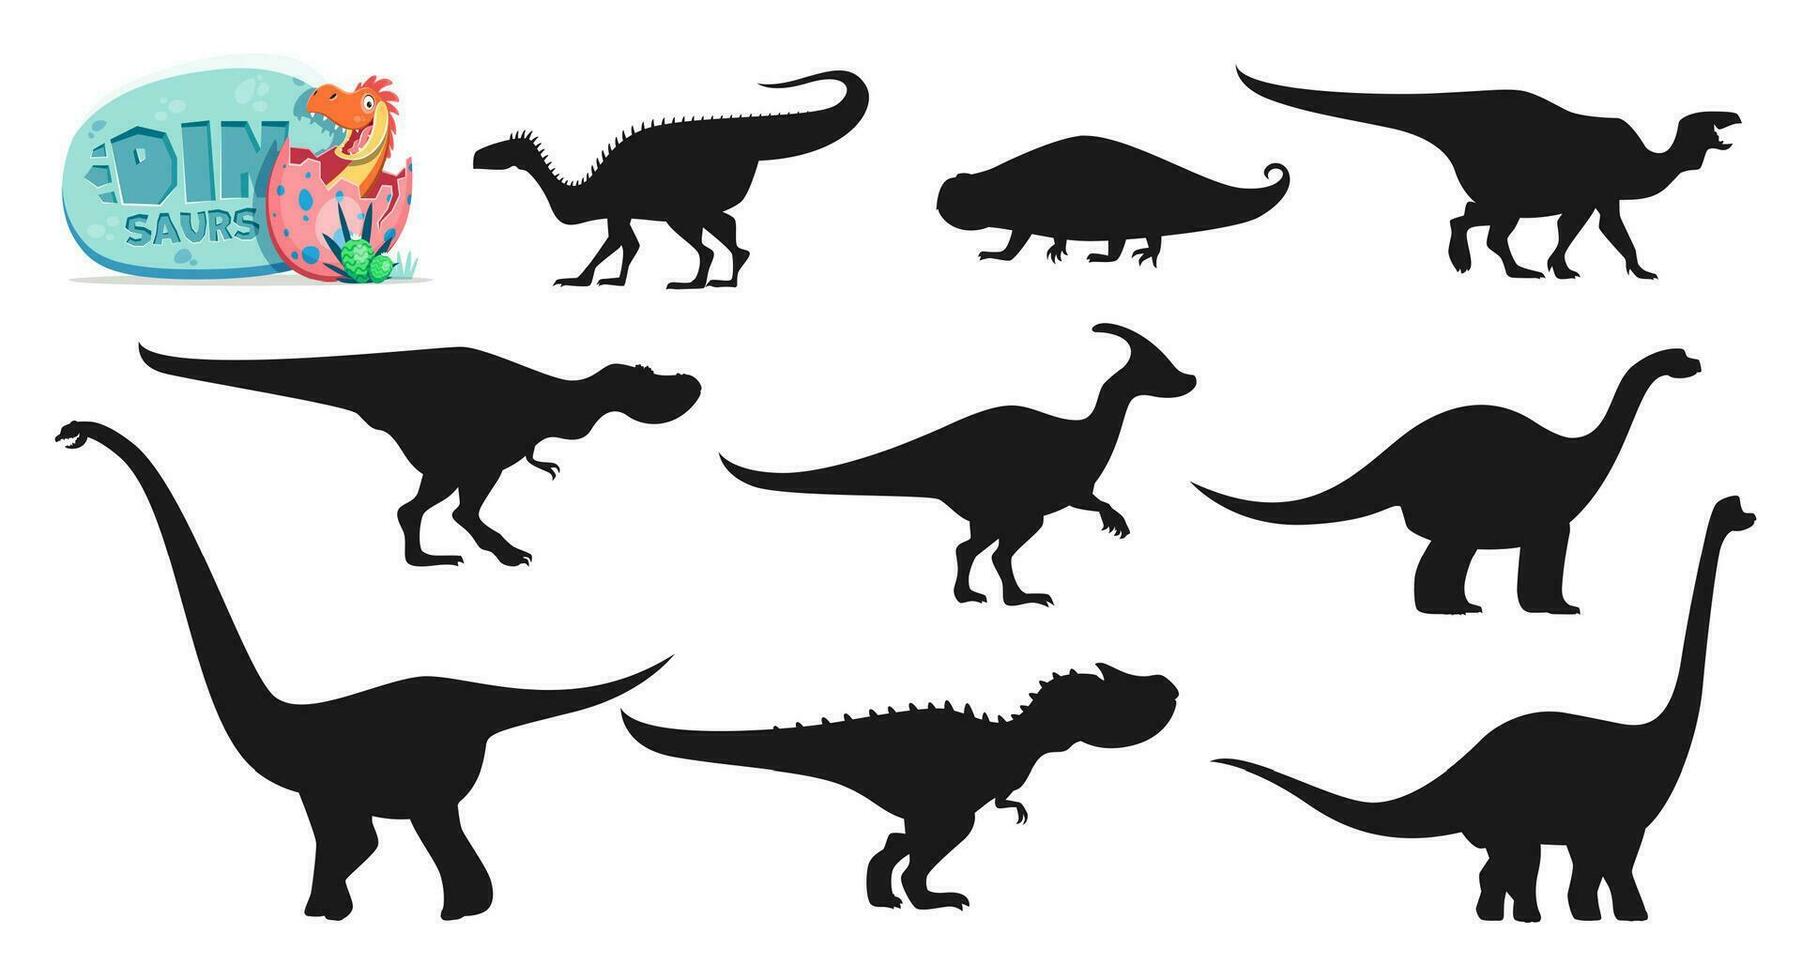 isolé dinosaures dessin animé personnages silhouettes vecteur